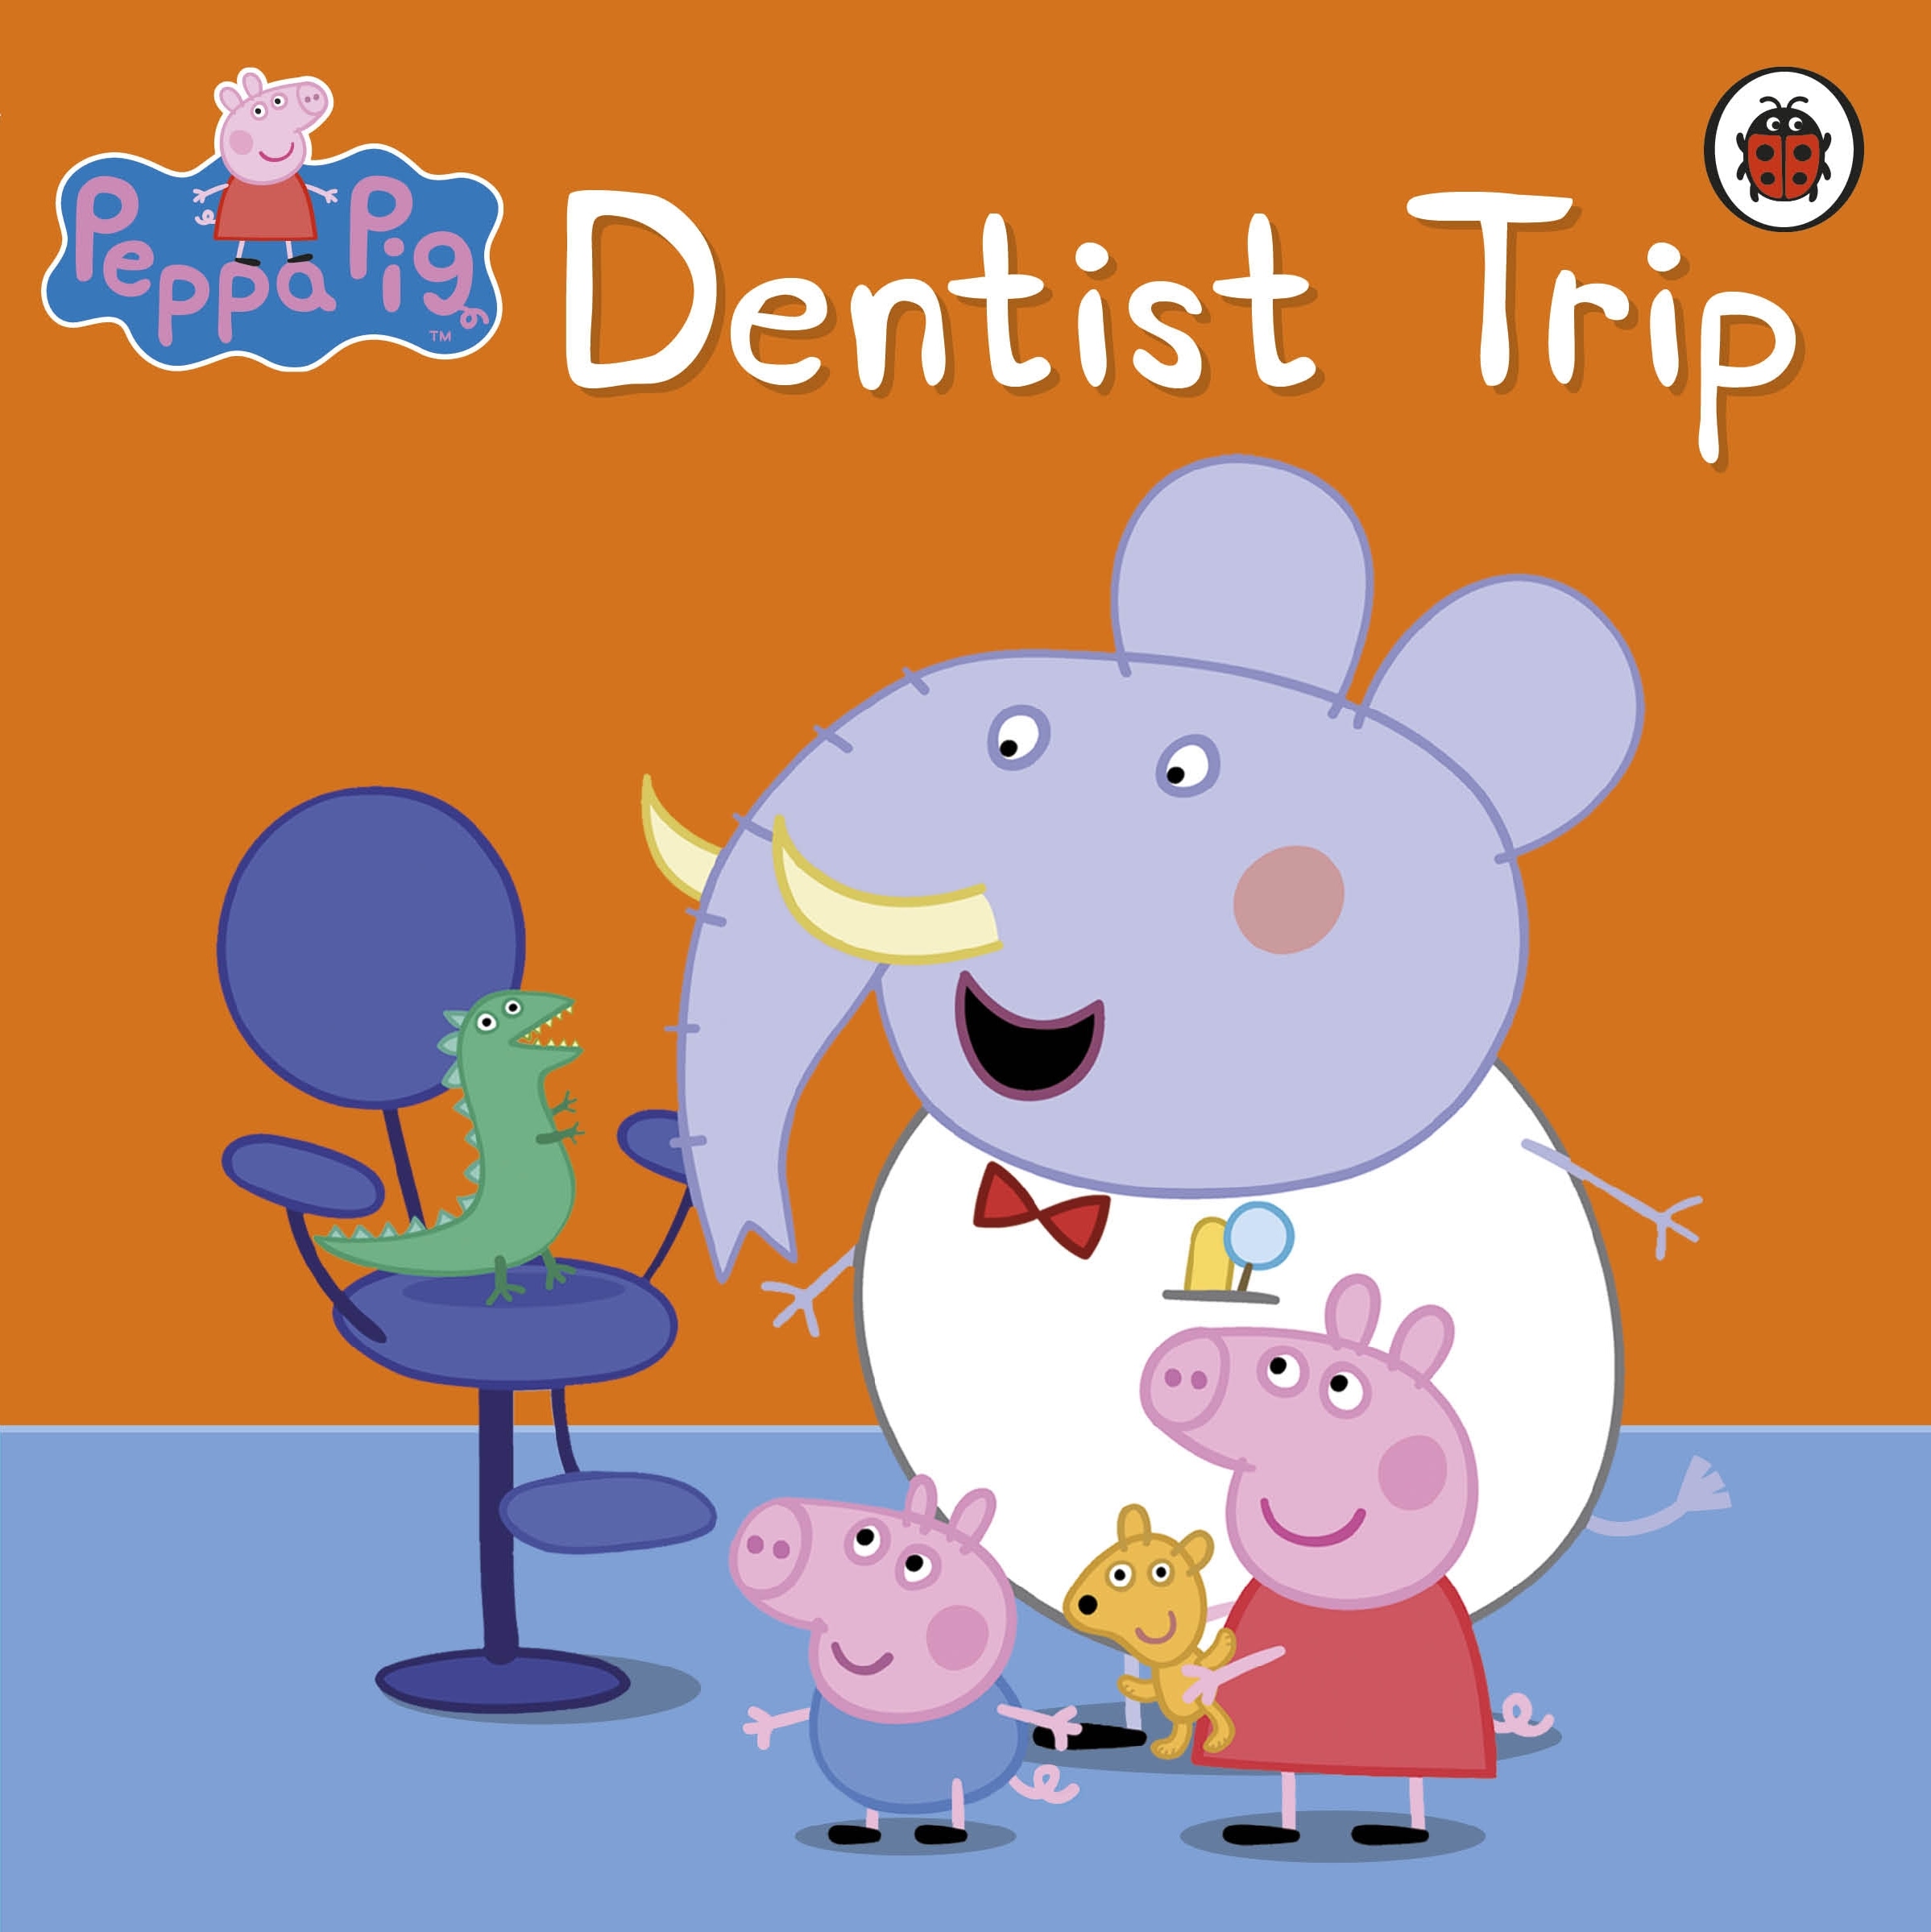 Book “Peppa Pig: Dentist Trip” by Peppa Pig — May 7, 2009